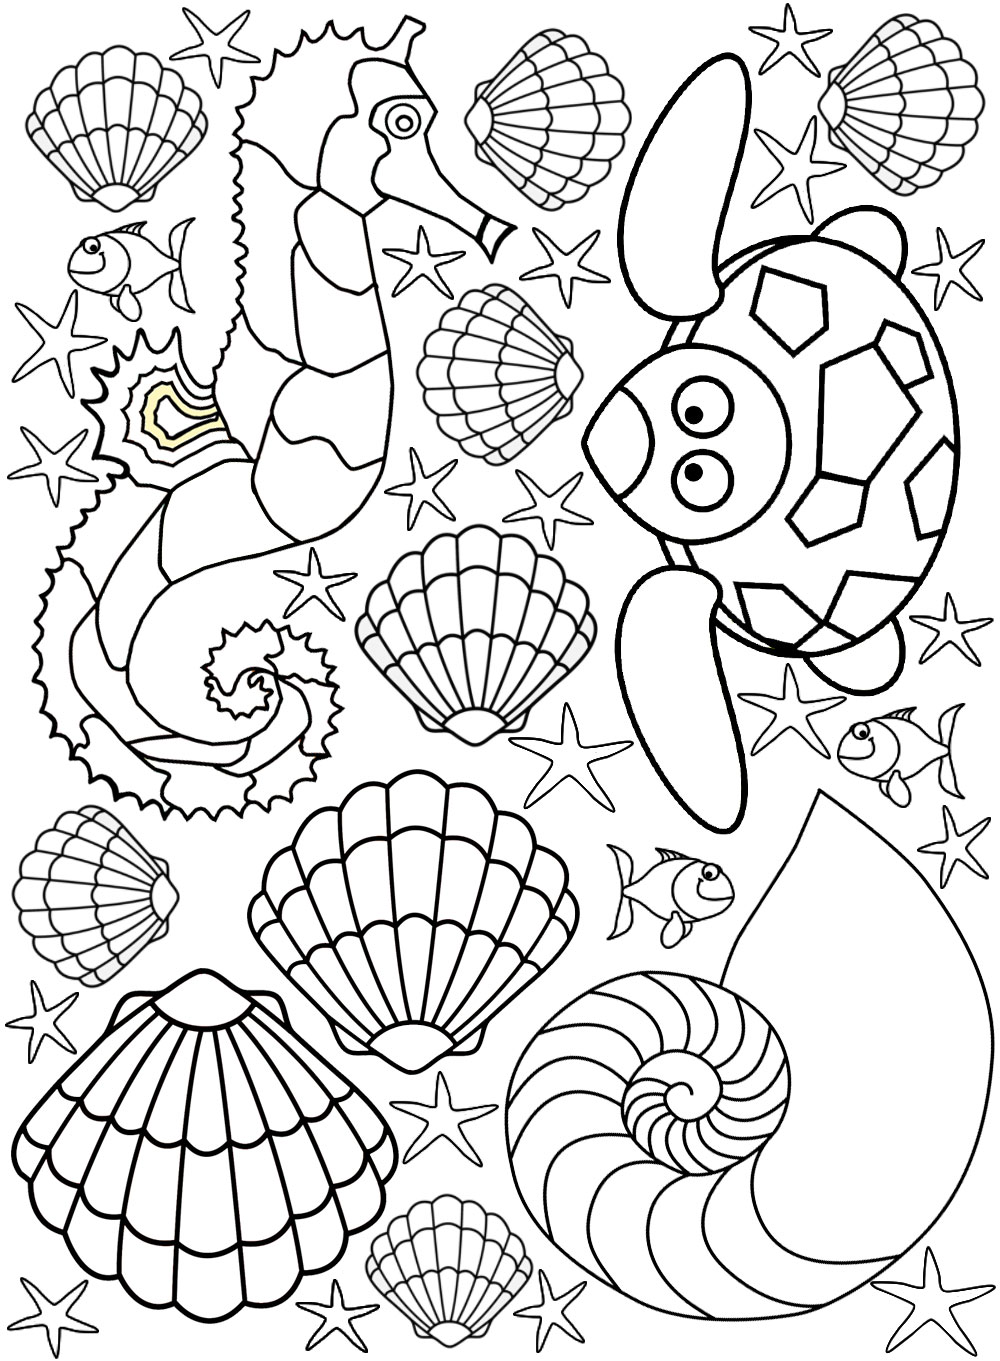 sea-creatures-coloring-page